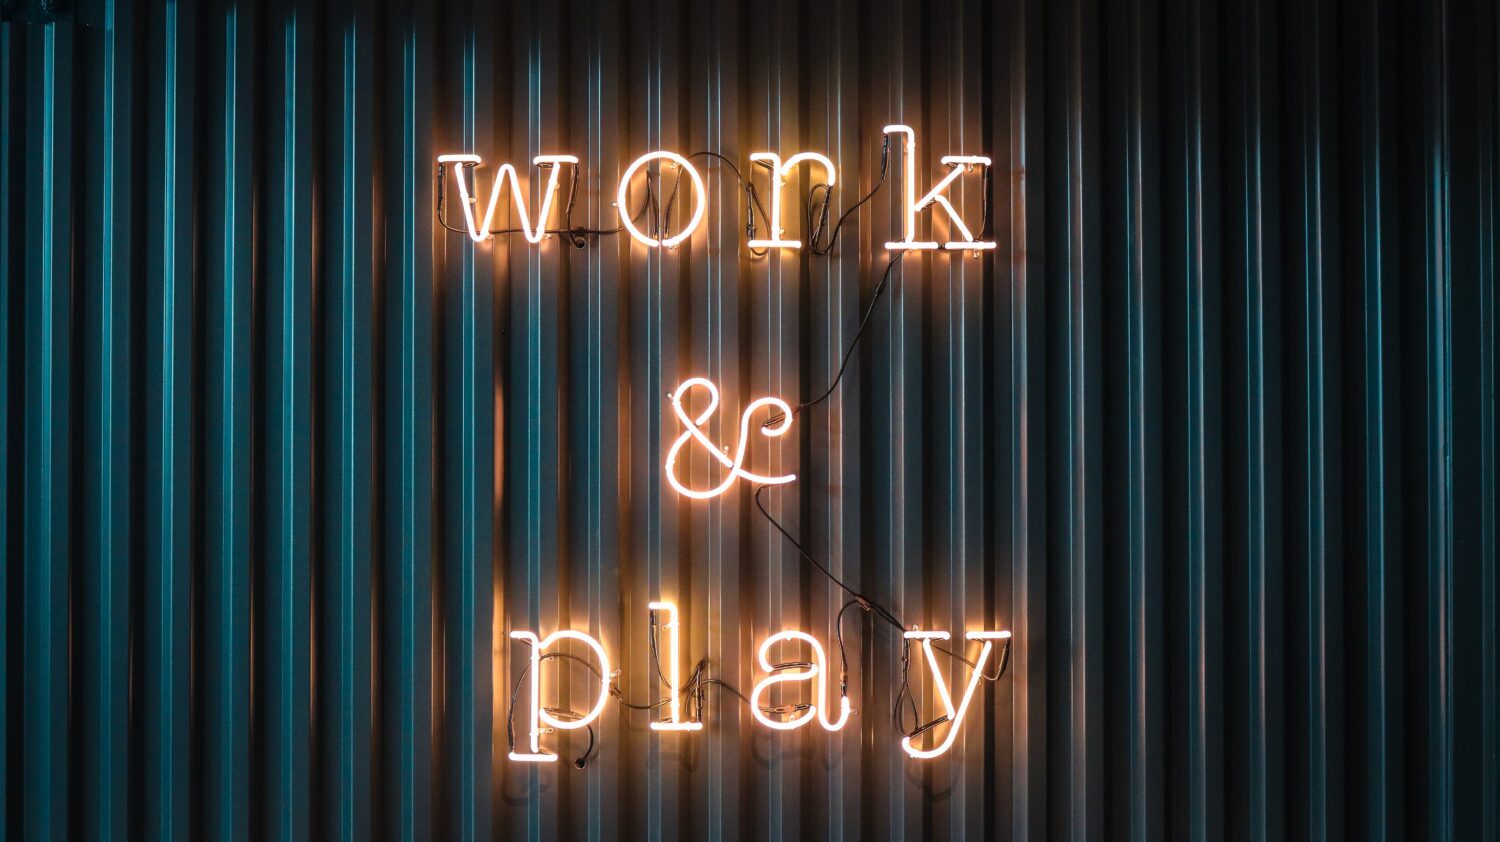 Neonschriftzug "Work und Play"